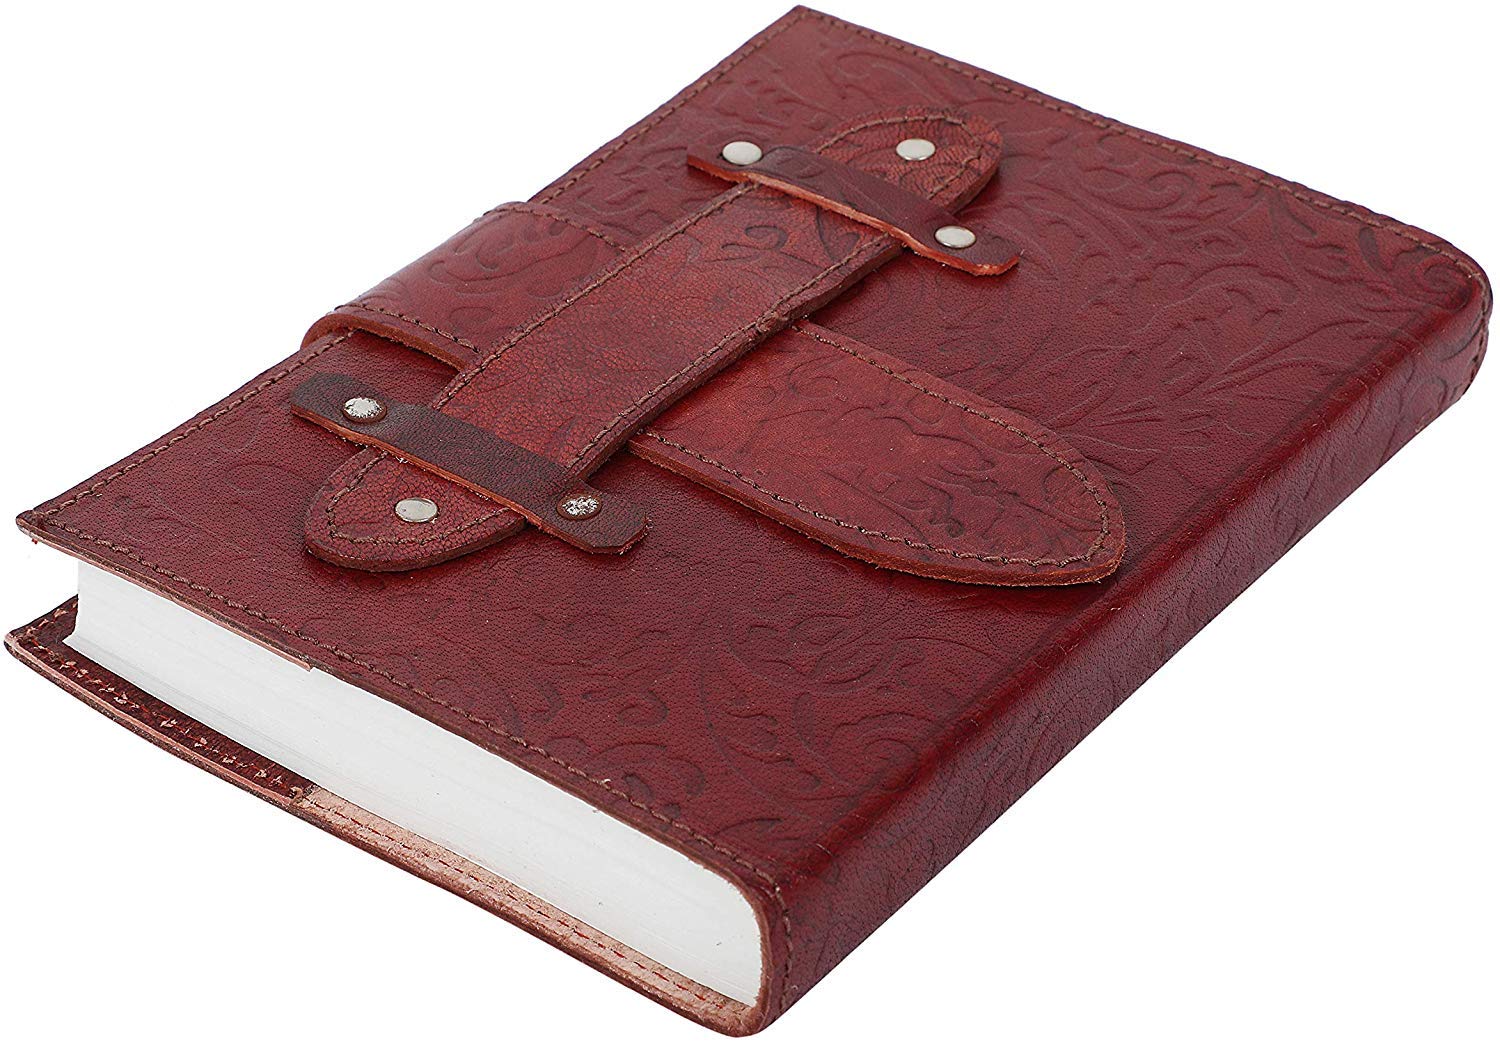 OVERDOSE CENTER PATTY Journal Notebook Handgemachtes Leder Journal Reisetagebuch Schreib journal Organizer planer Tagebuch Size 5x7 inches | 12x17 cm